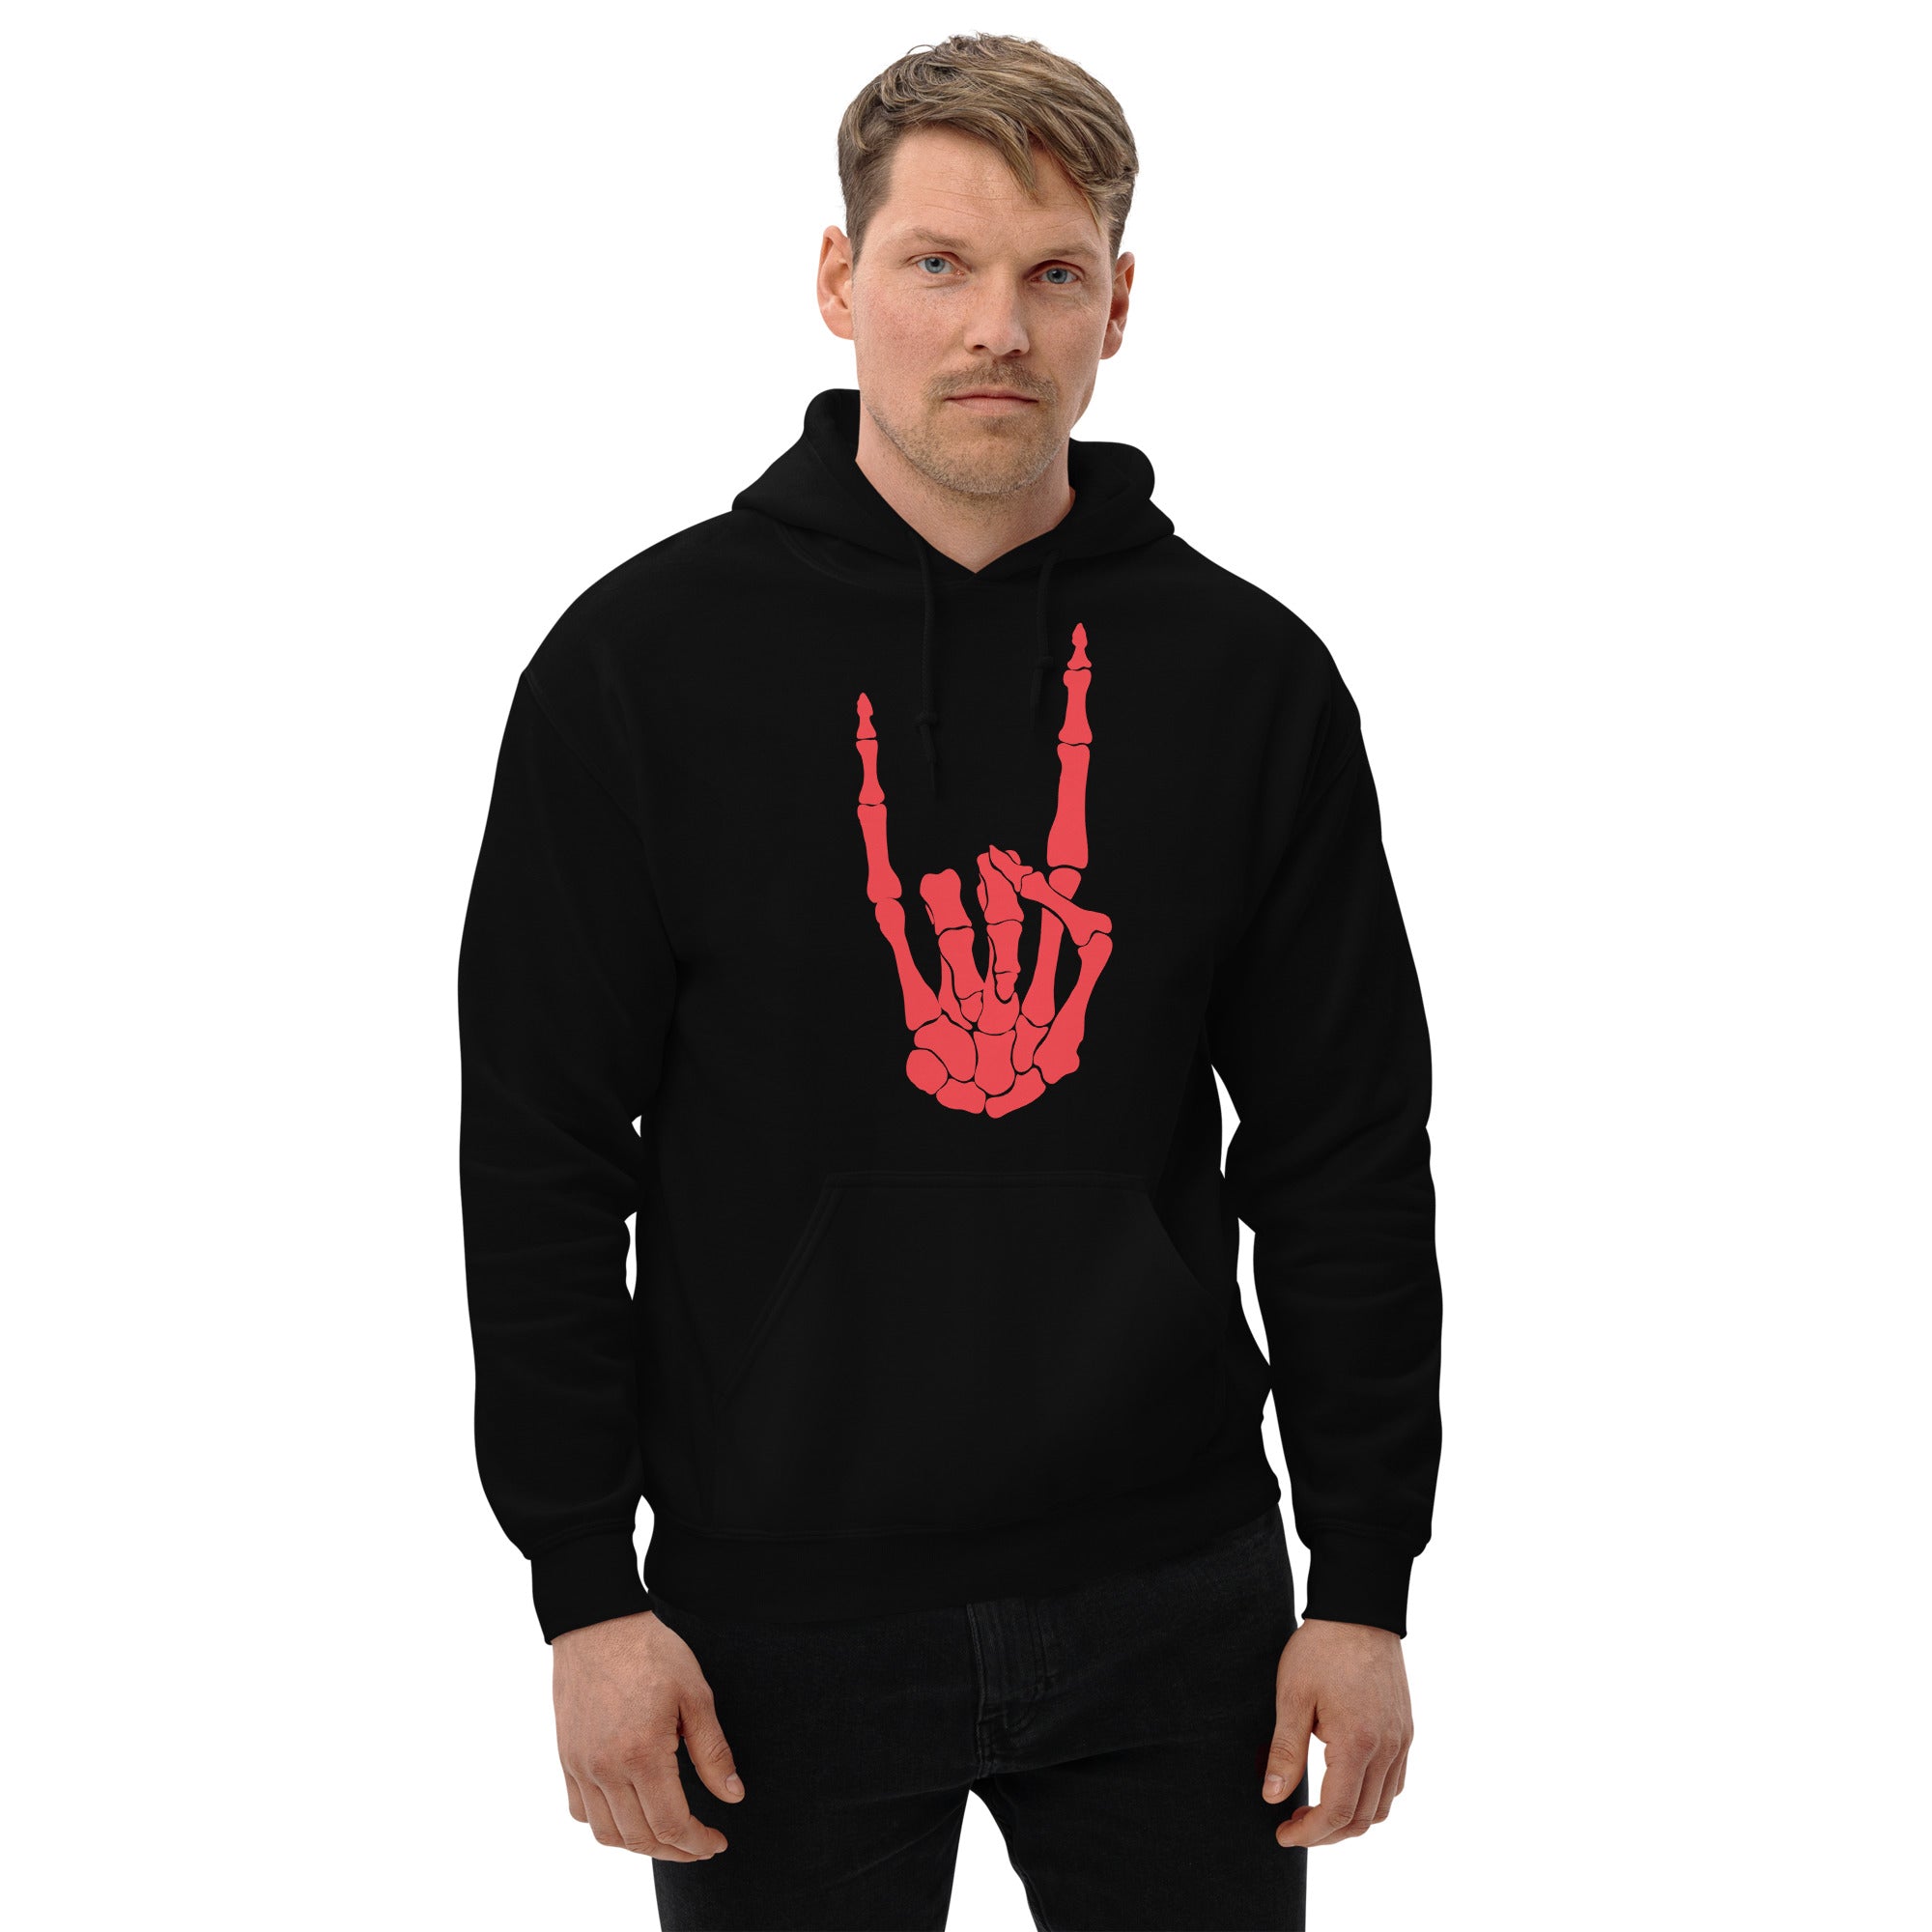 Devil Bone Hand Heavy Metal Horns Up Sign Unisex Hoodie Sweatshirt Red Print - Edge of Life Designs